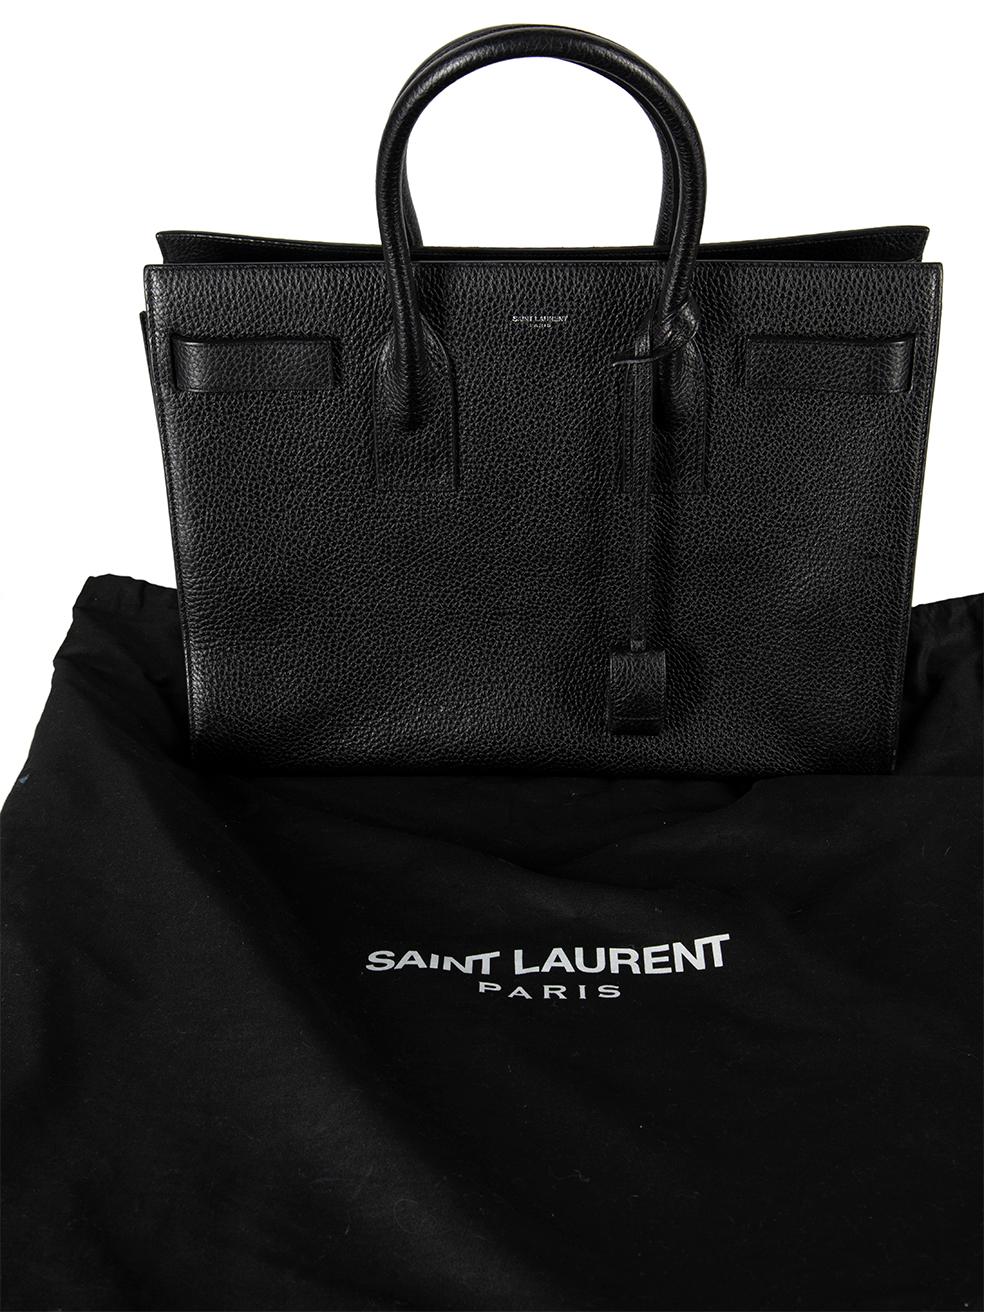 Saint Laurent Women's Black Grained Leather Sac de Jour Handbag 3